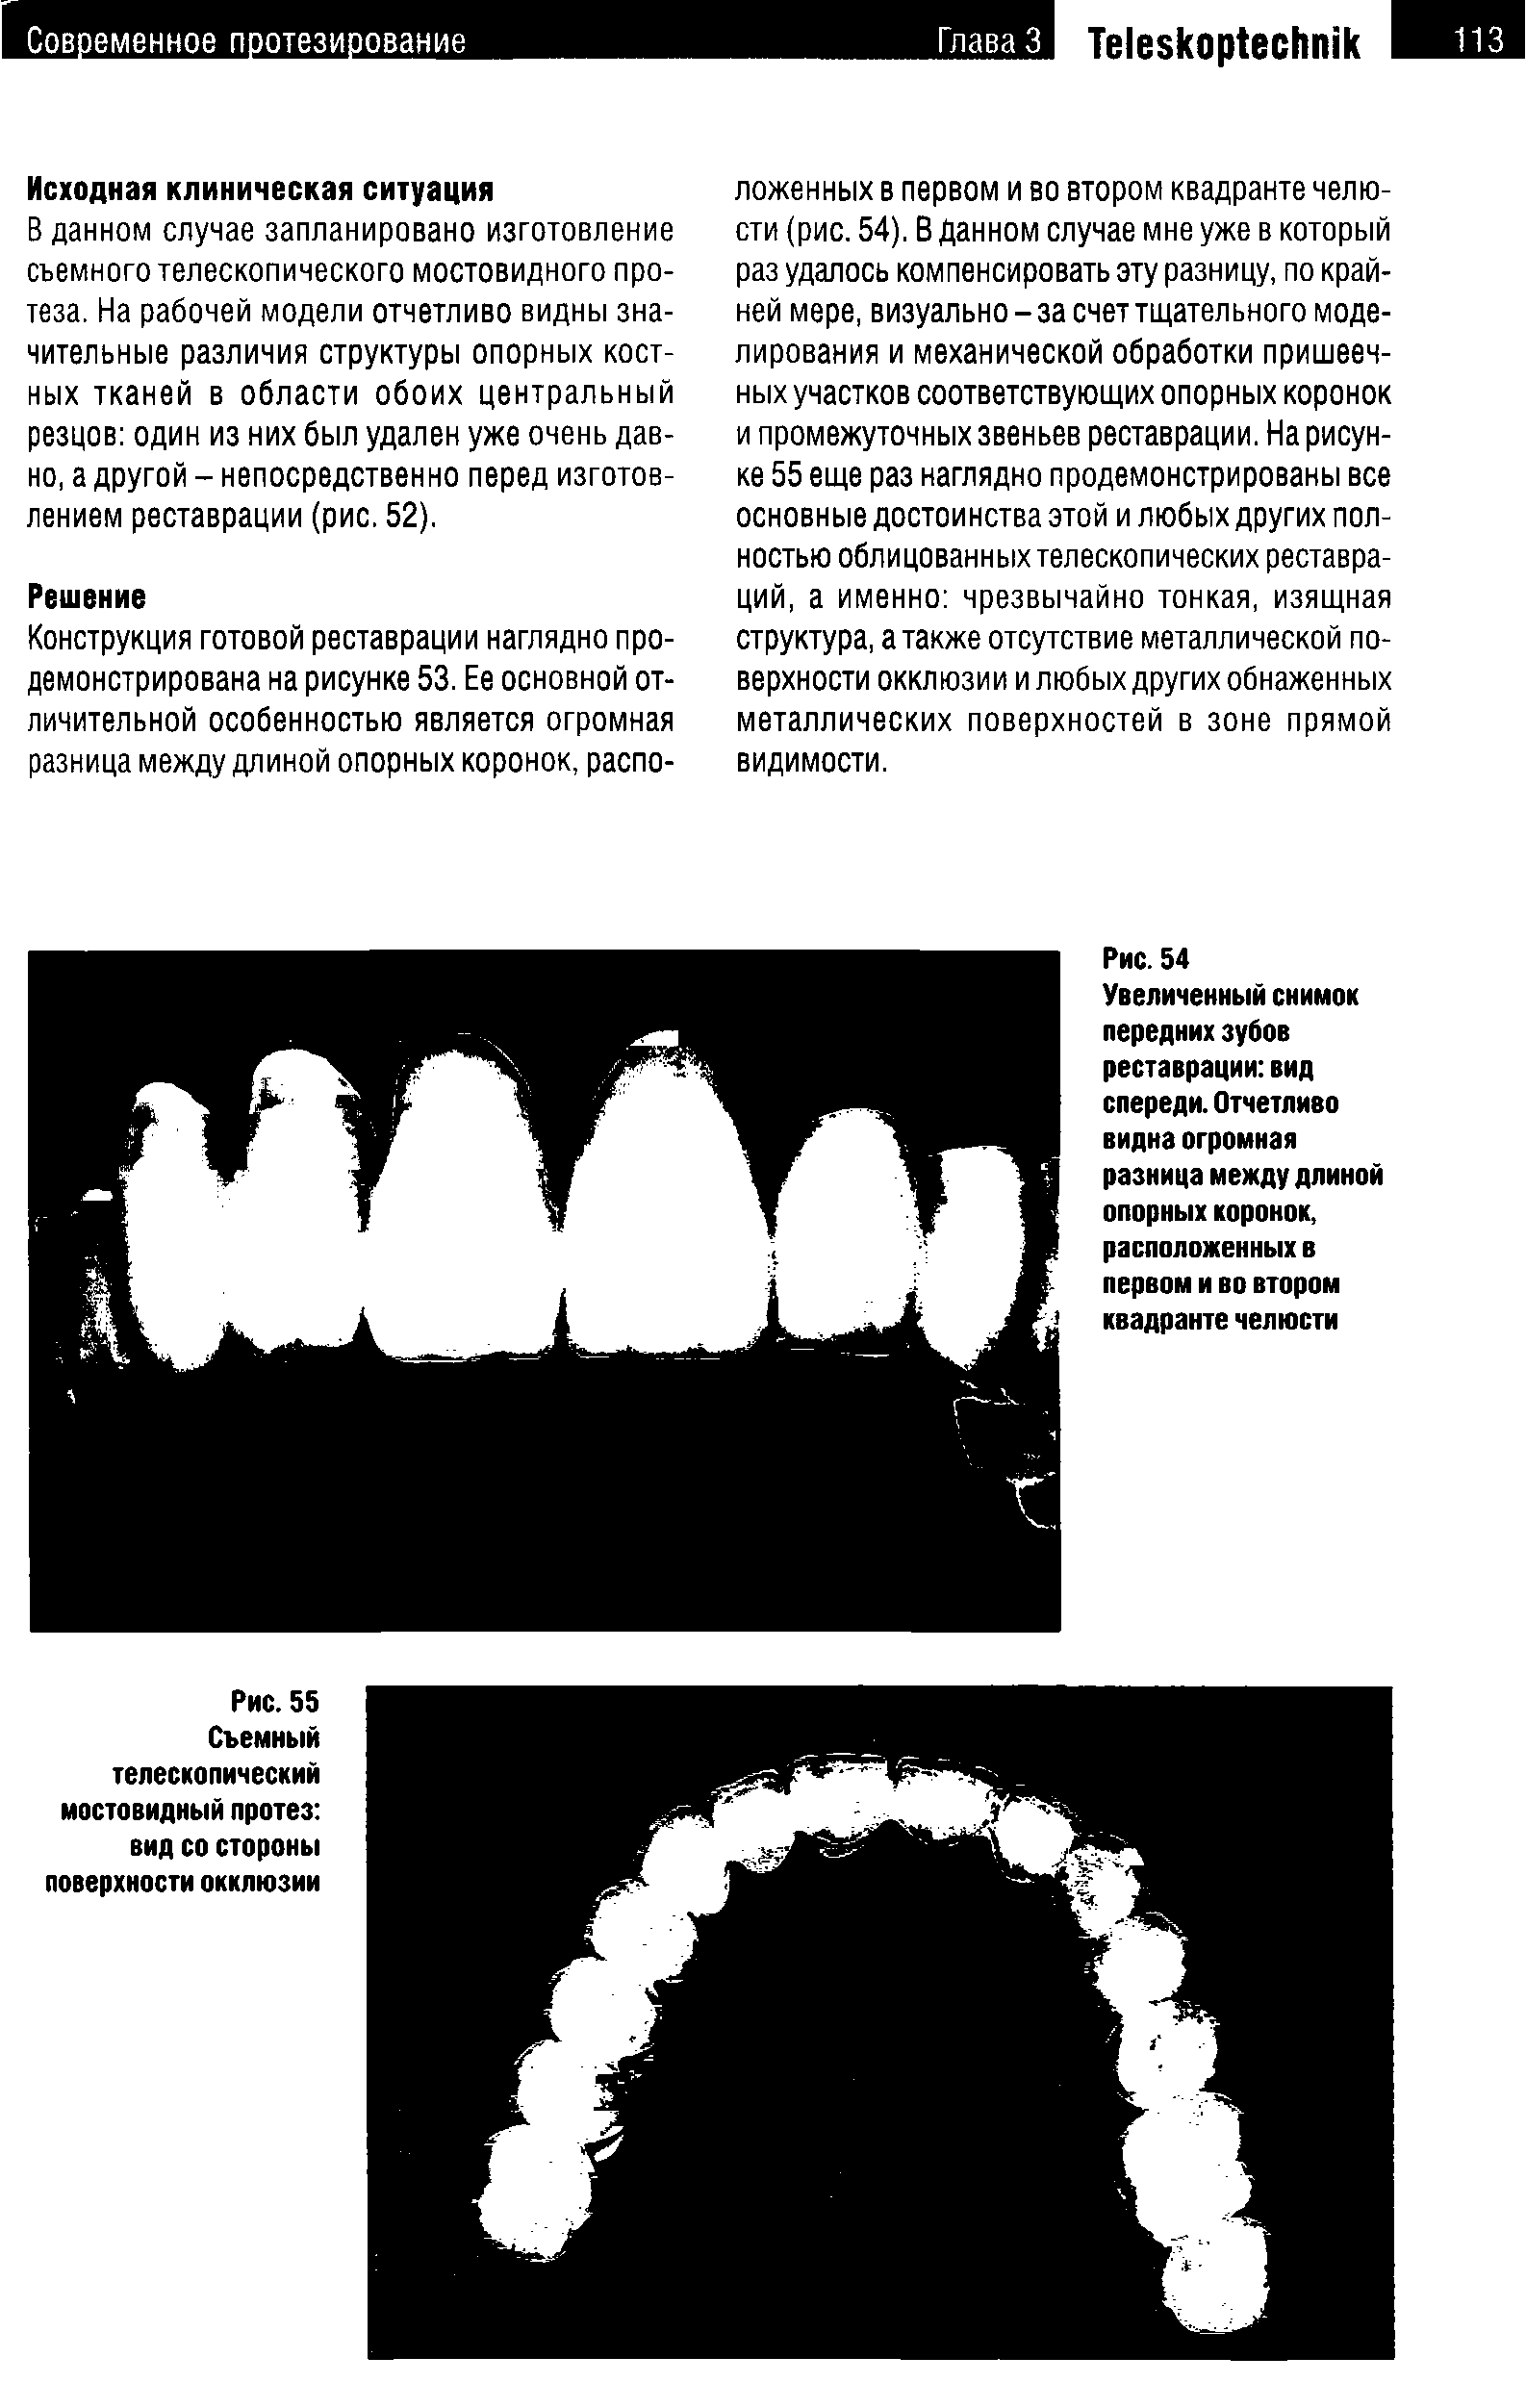 Рис. 54 Увеличенный снимок передних зубов реставрации вид спереди.Отчетливо видна огромная разница между длиной опорных коронок, расположенных в первом и во втором квадранте челюсти...